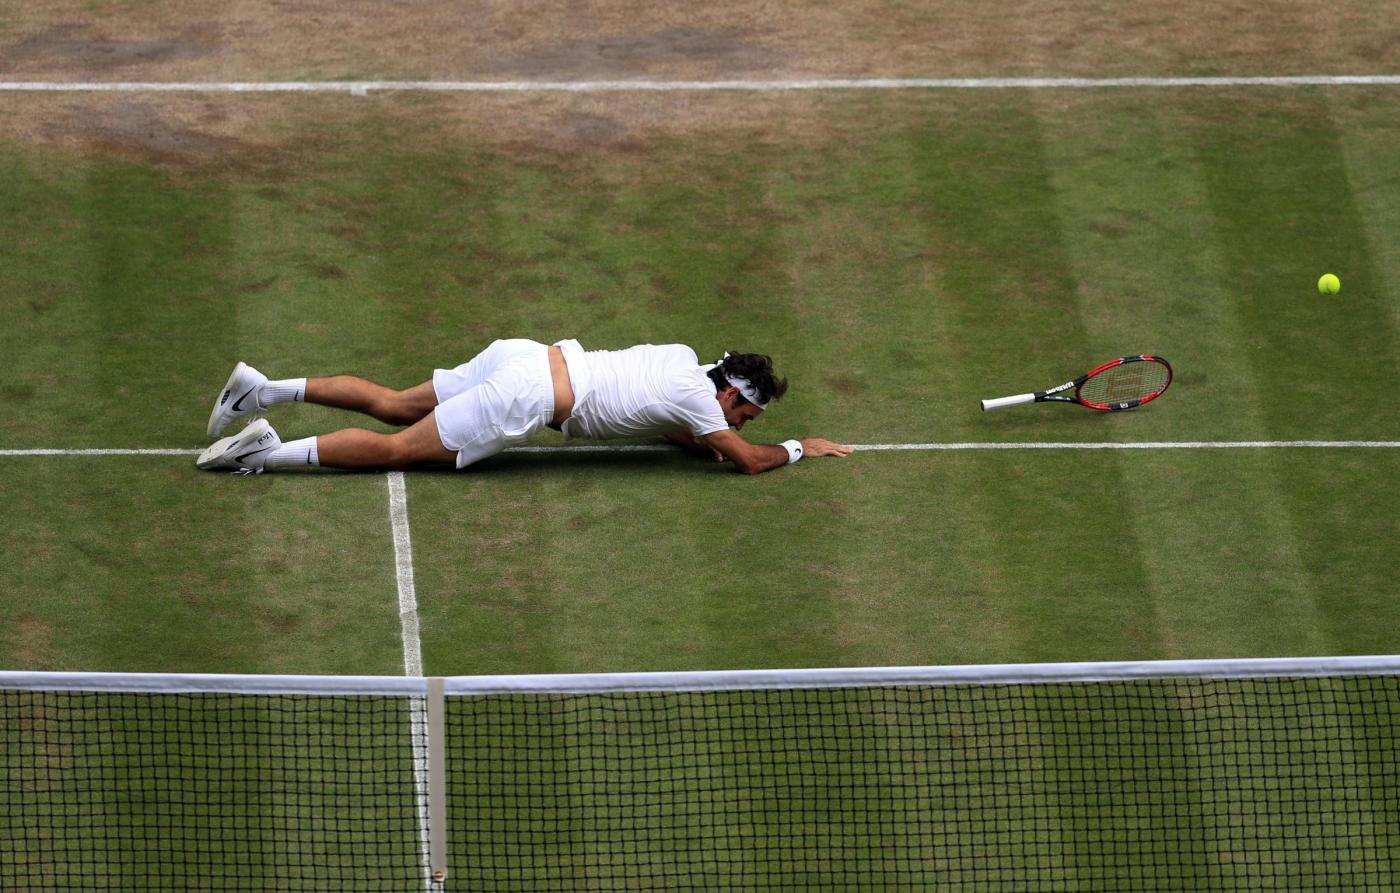 Olimpiadi 2016: Federer non ci sarà per problemi al ginocchio